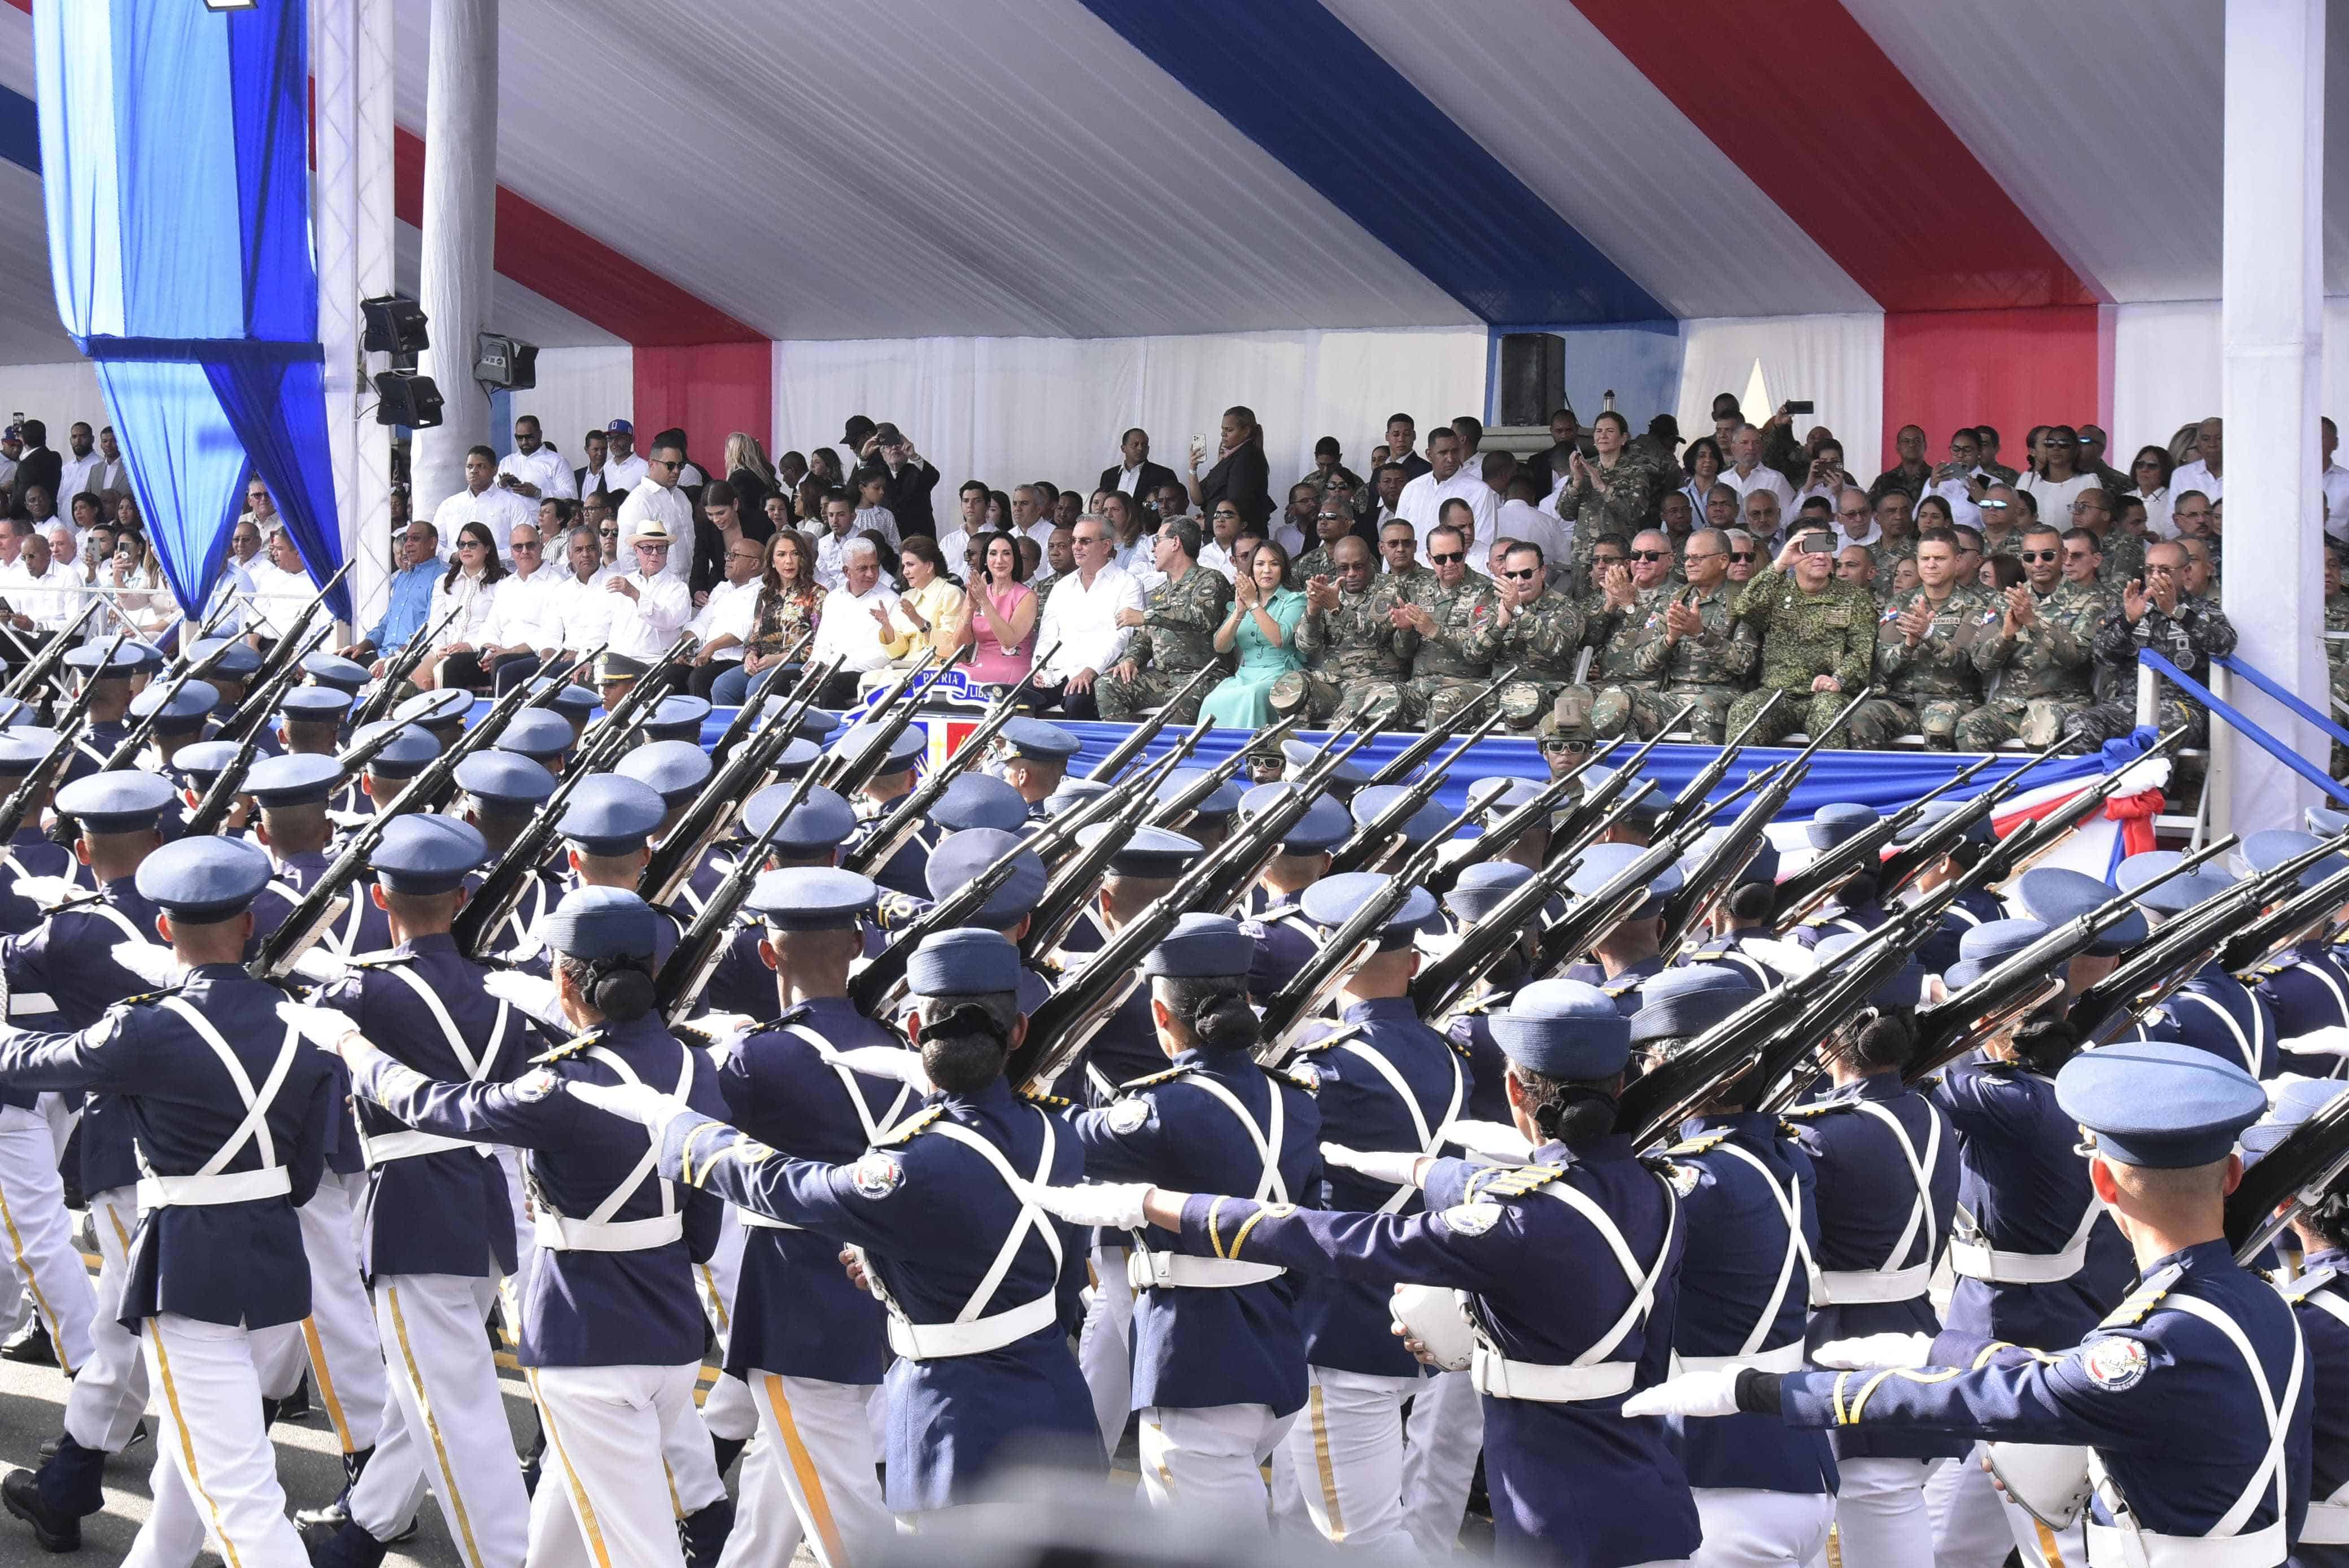 Soldados cruzan frente a la tarima presidencial en el desfile militar en conmemoración del 180 aniversario de la Independencia Nacional.